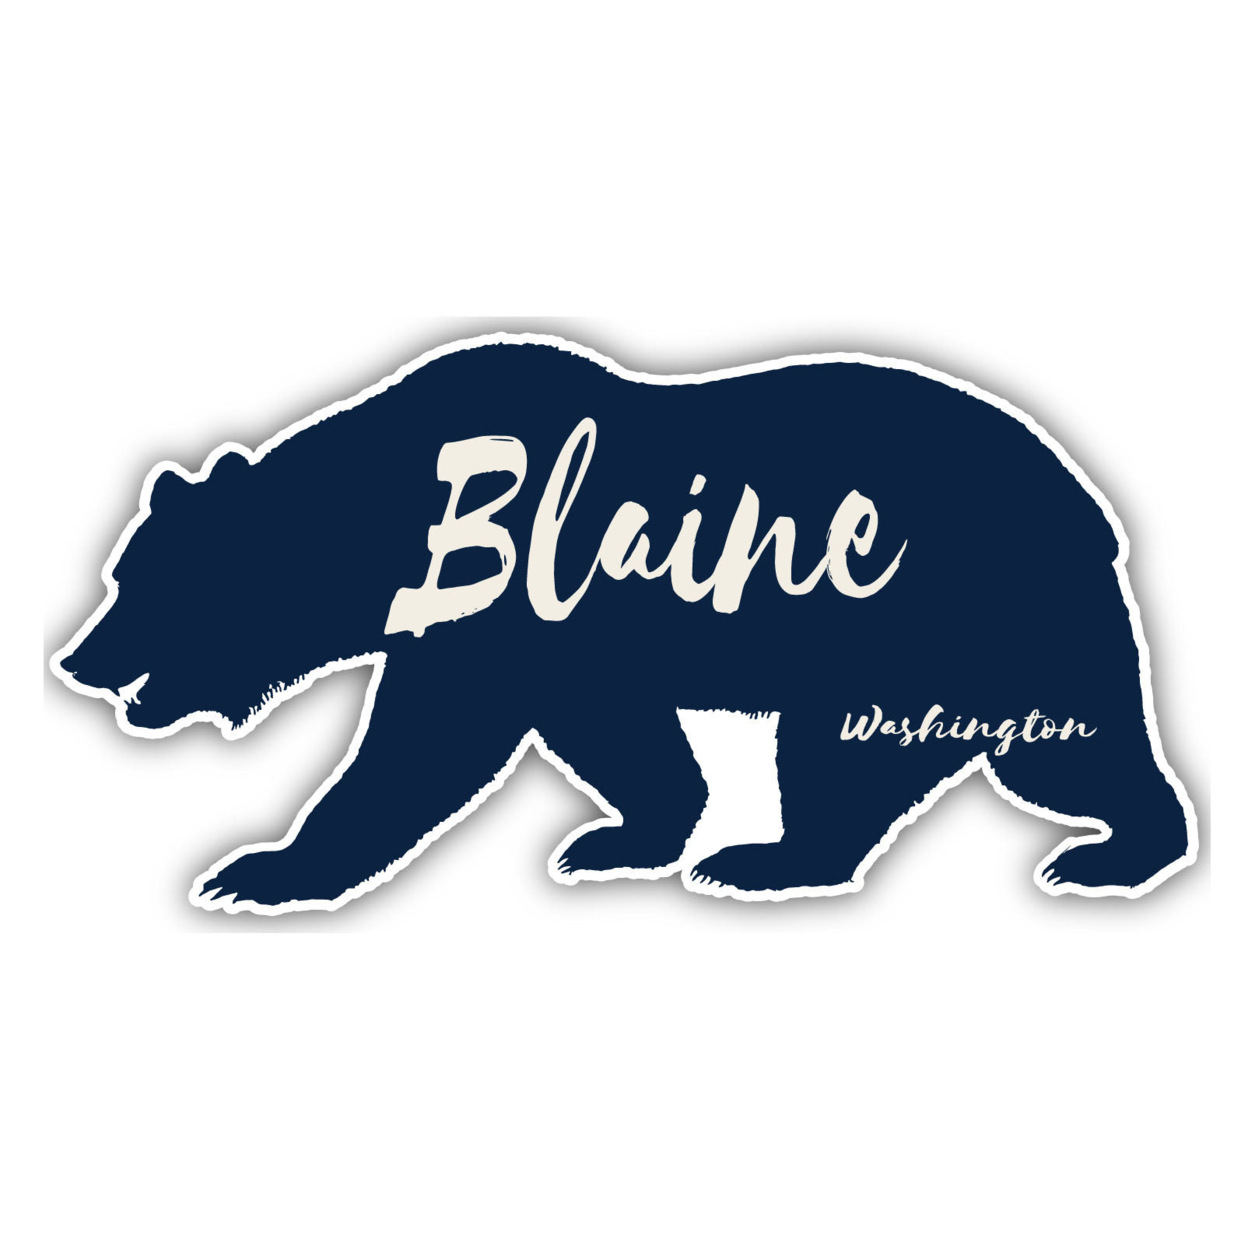 Blaine Washington Souvenir Decorative Stickers (Choose Theme And Size) - Single Unit, 10-Inch, Tent